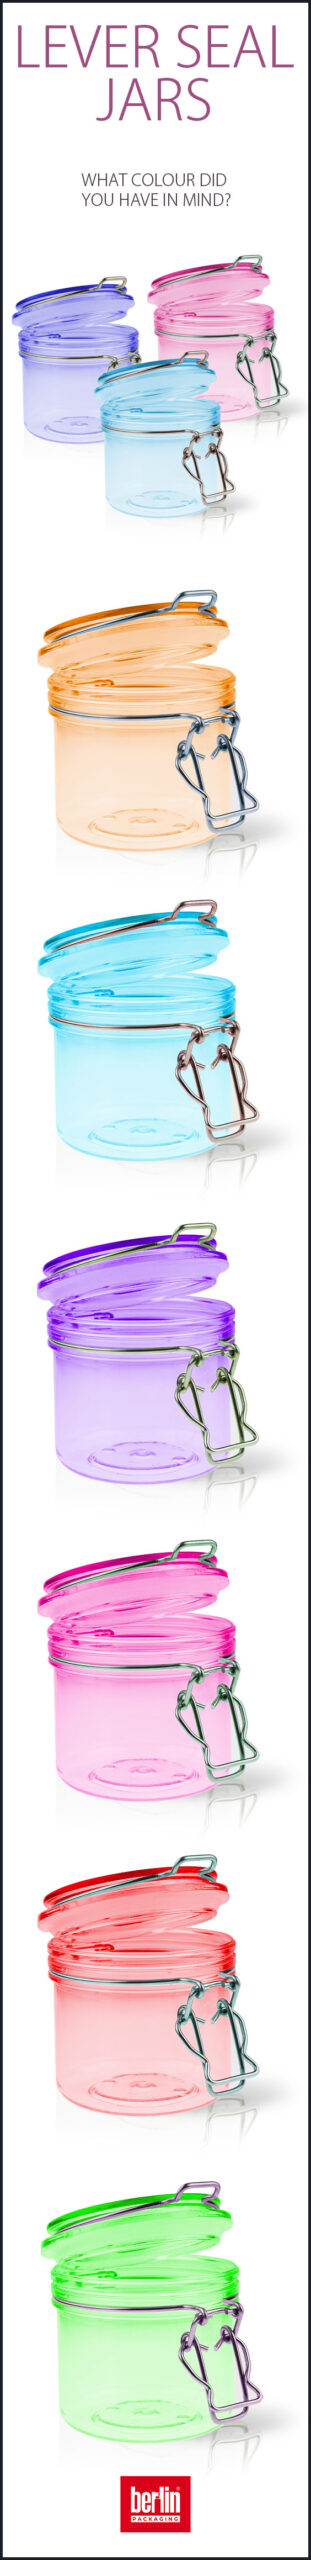 lever-seal-jars-packaging